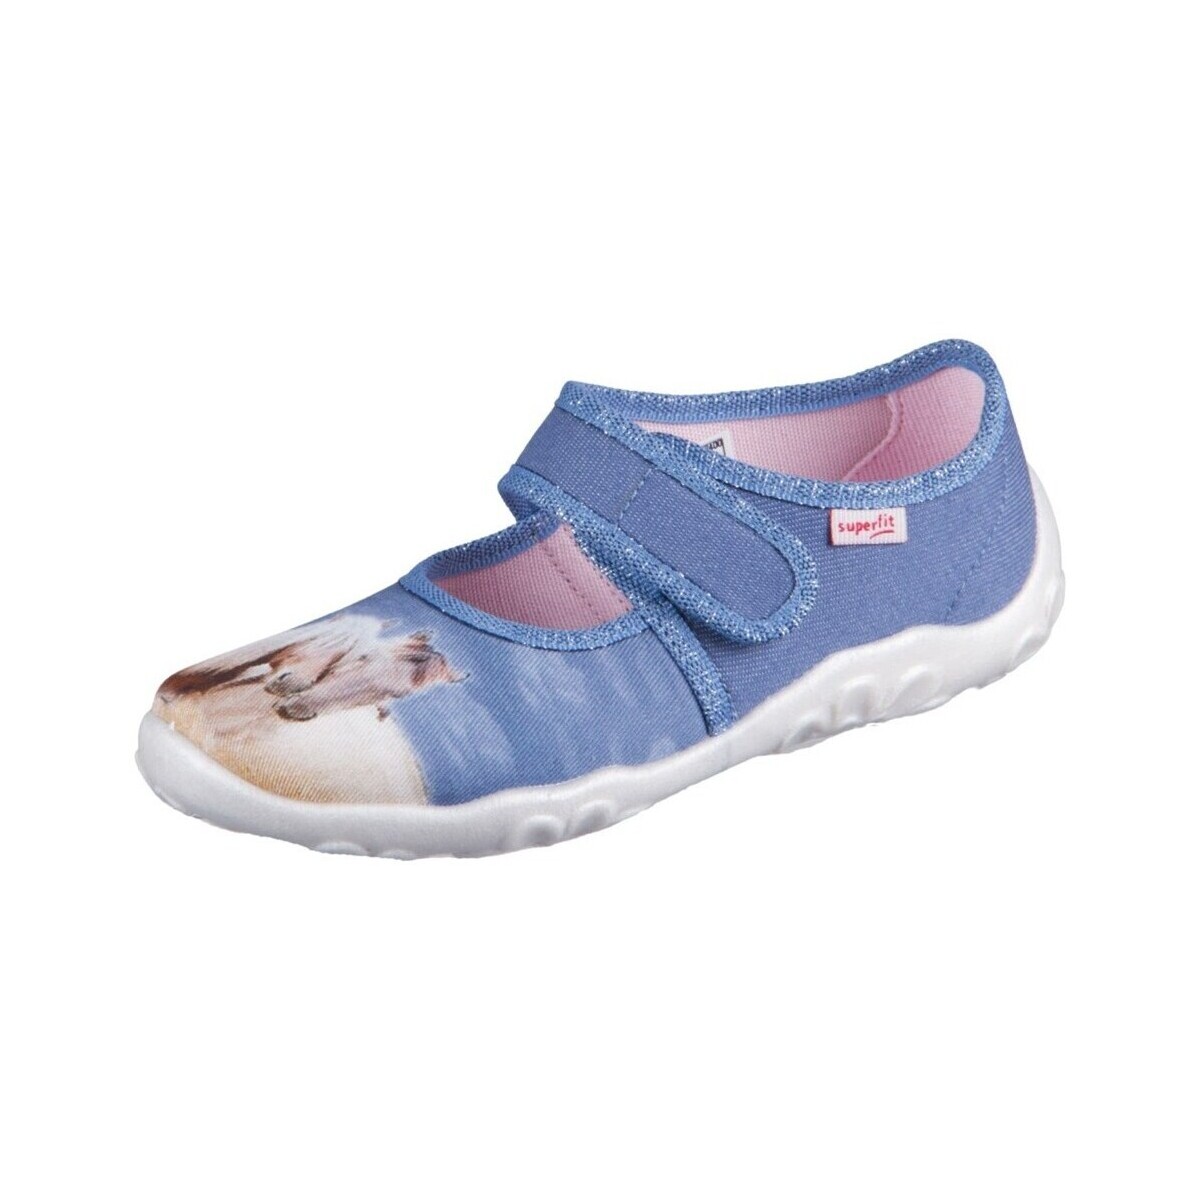 Sapatos Criança Chinelos Superfit Bonny Azul